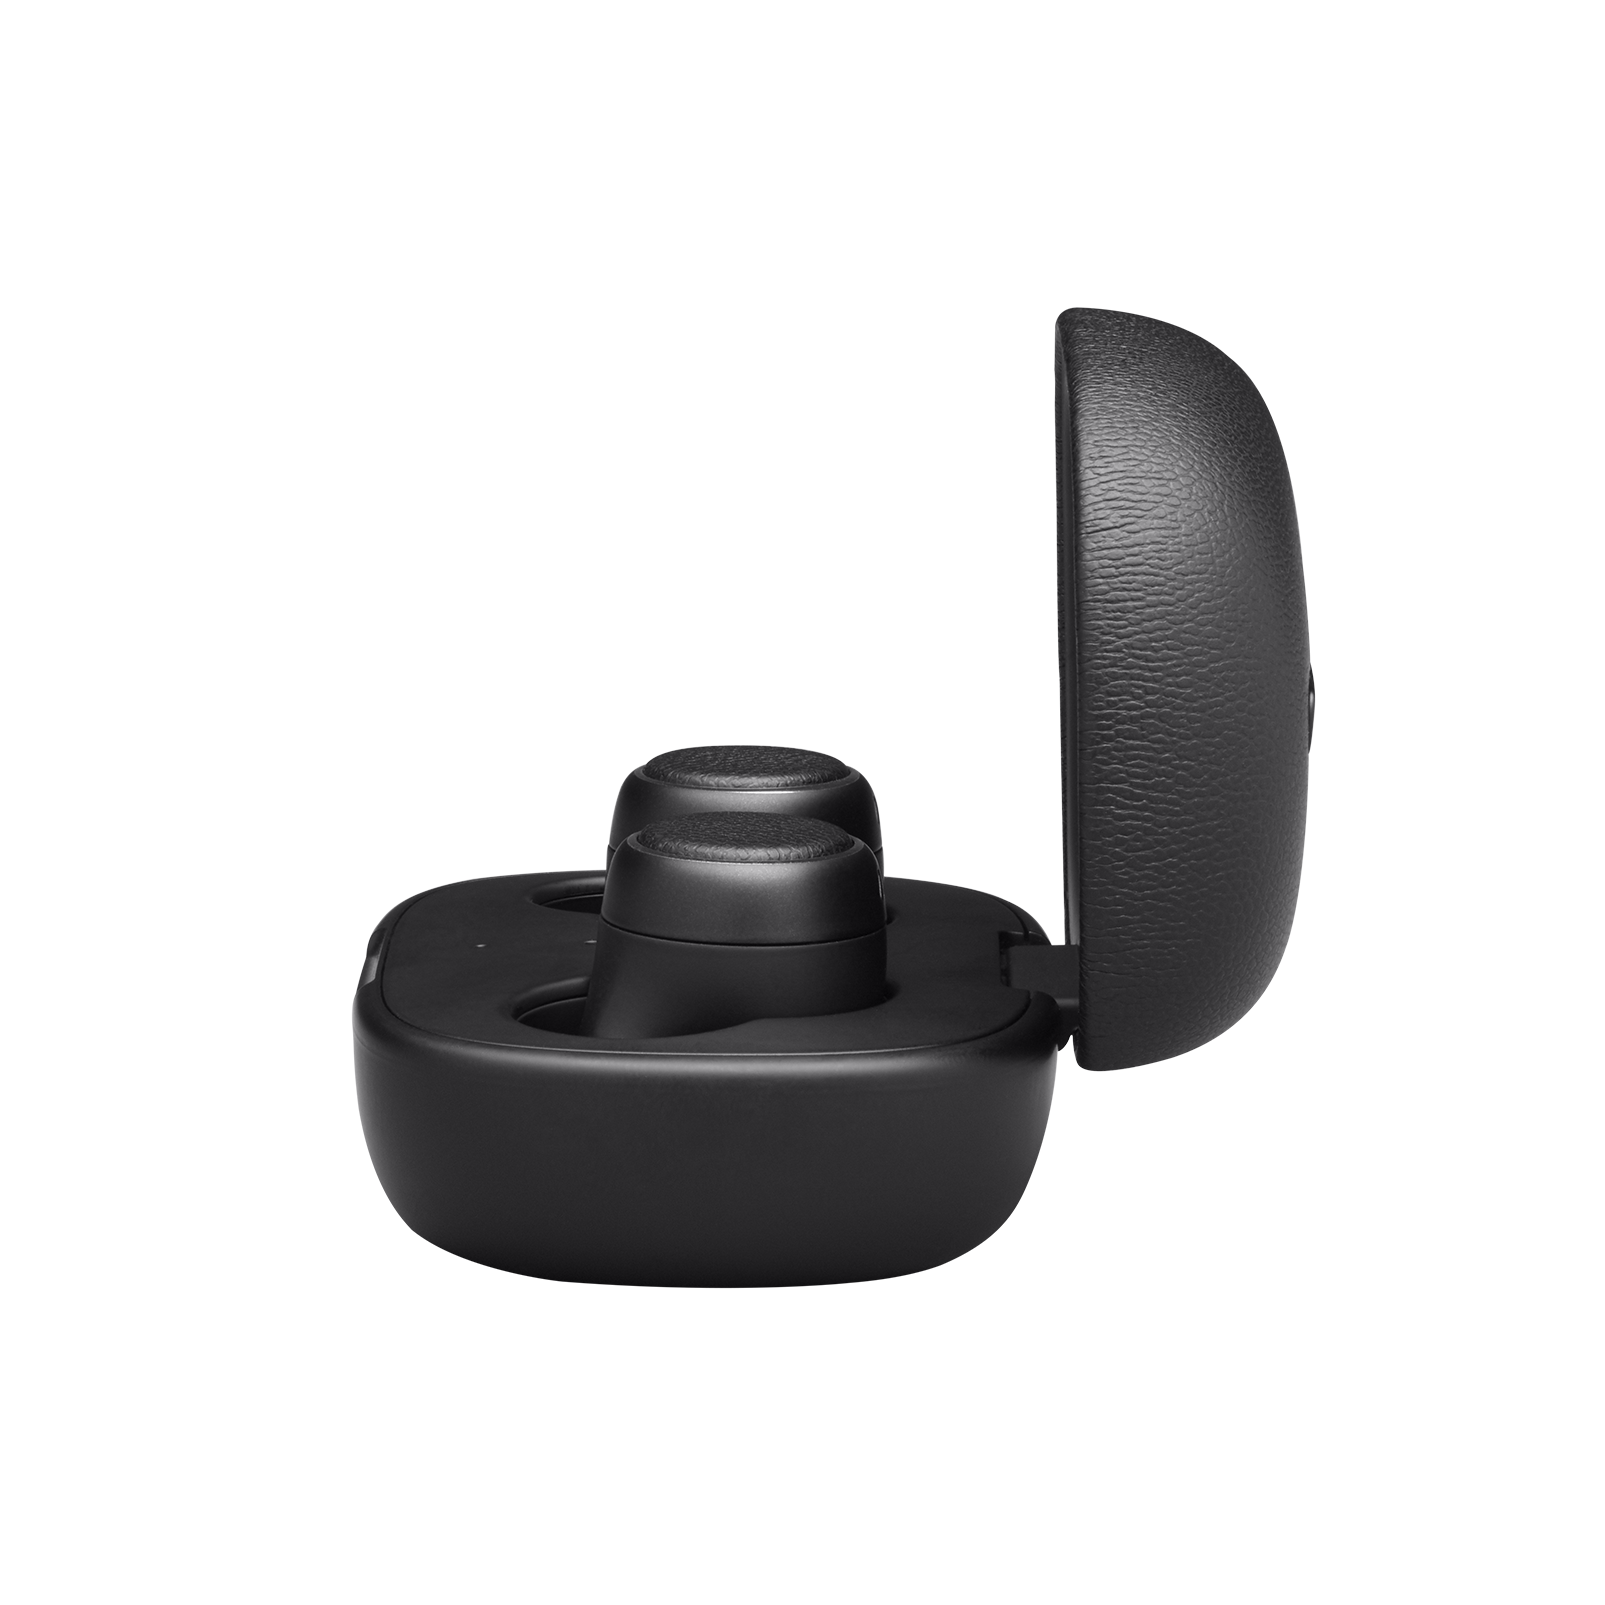 Harman Kardon FLY TWS - Black - True Wireless in-ear headphones - Right